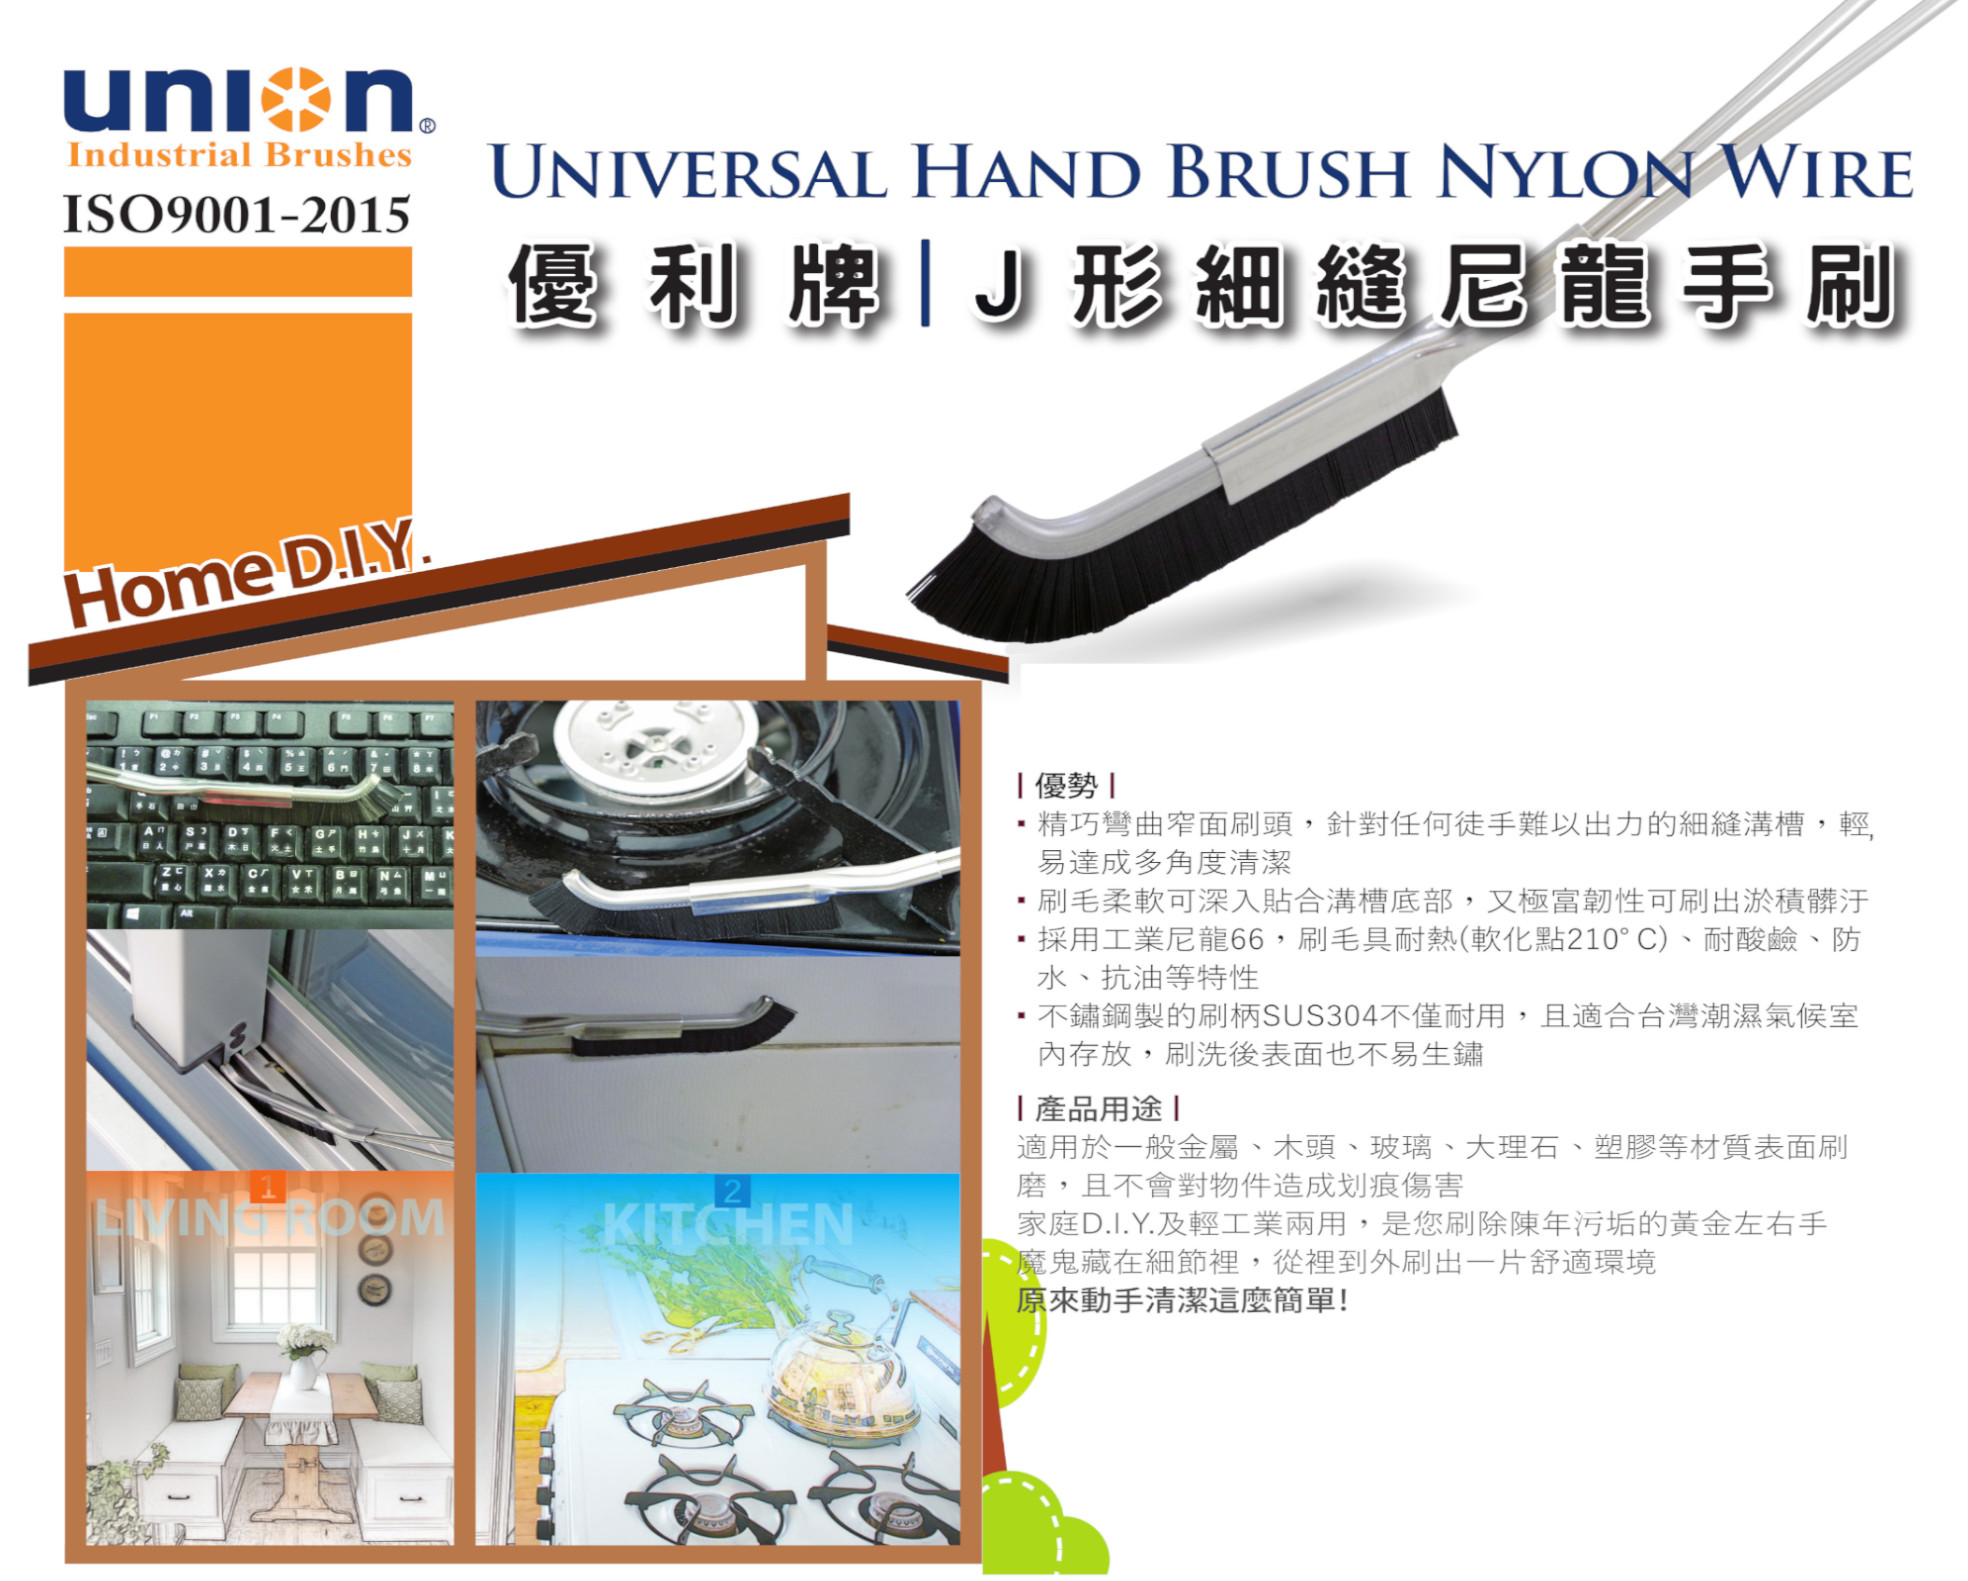 UNION Brush-Universal Hand Brush Nylon Wire 